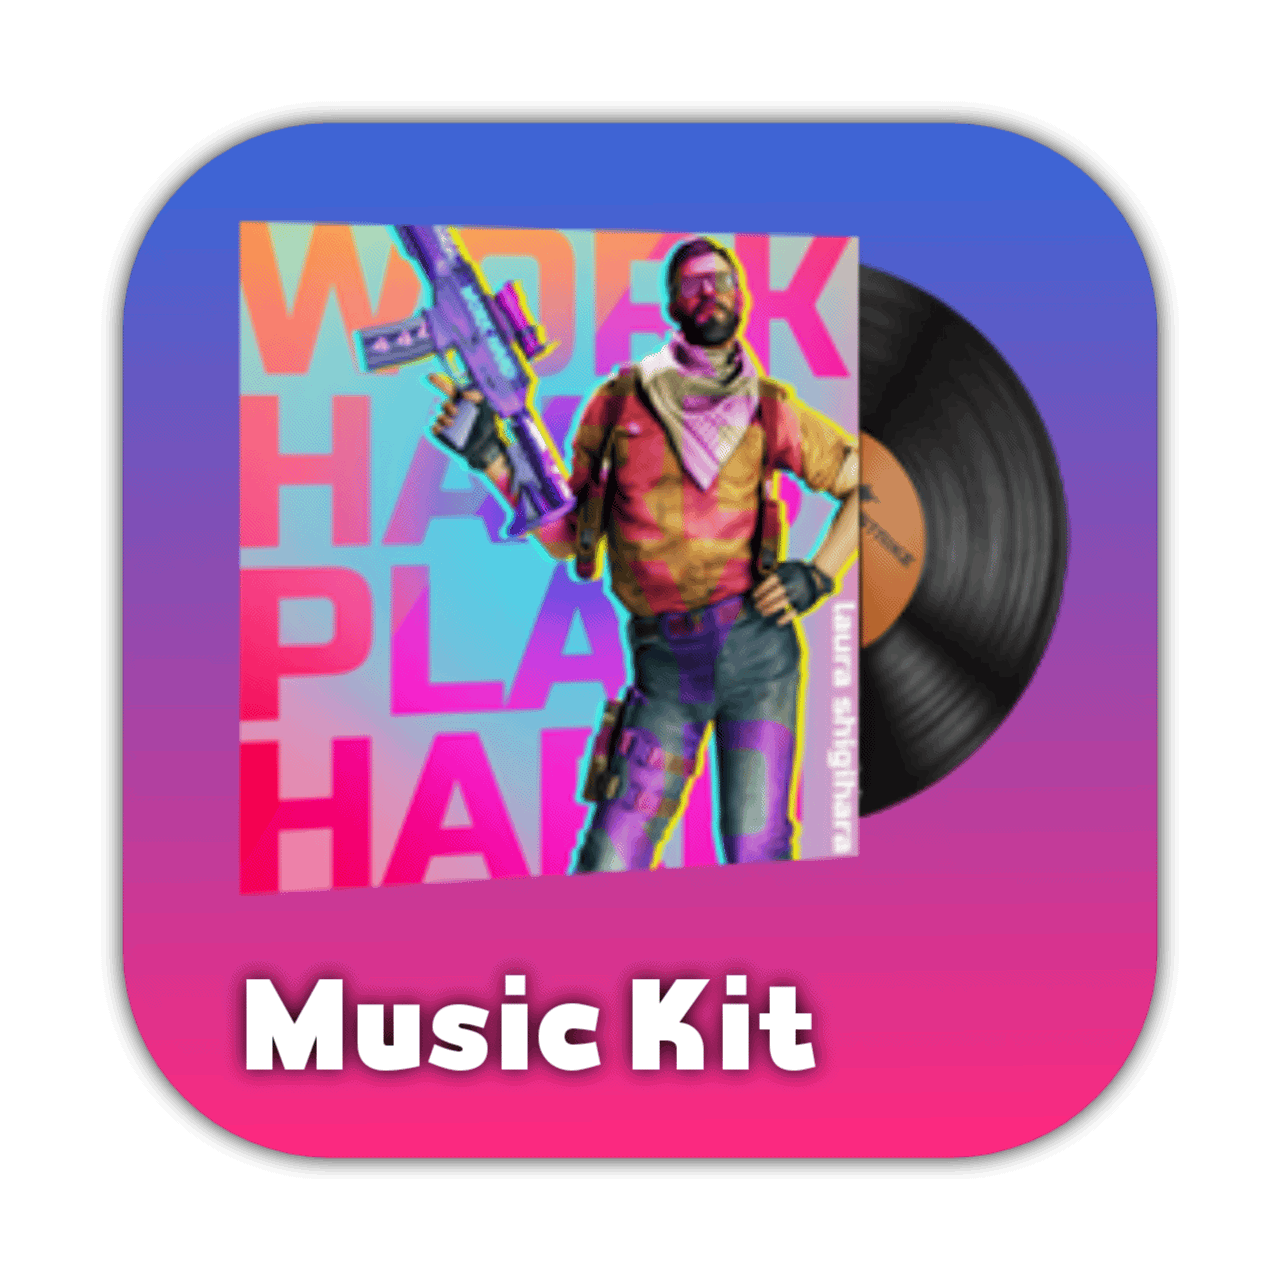 Music kit